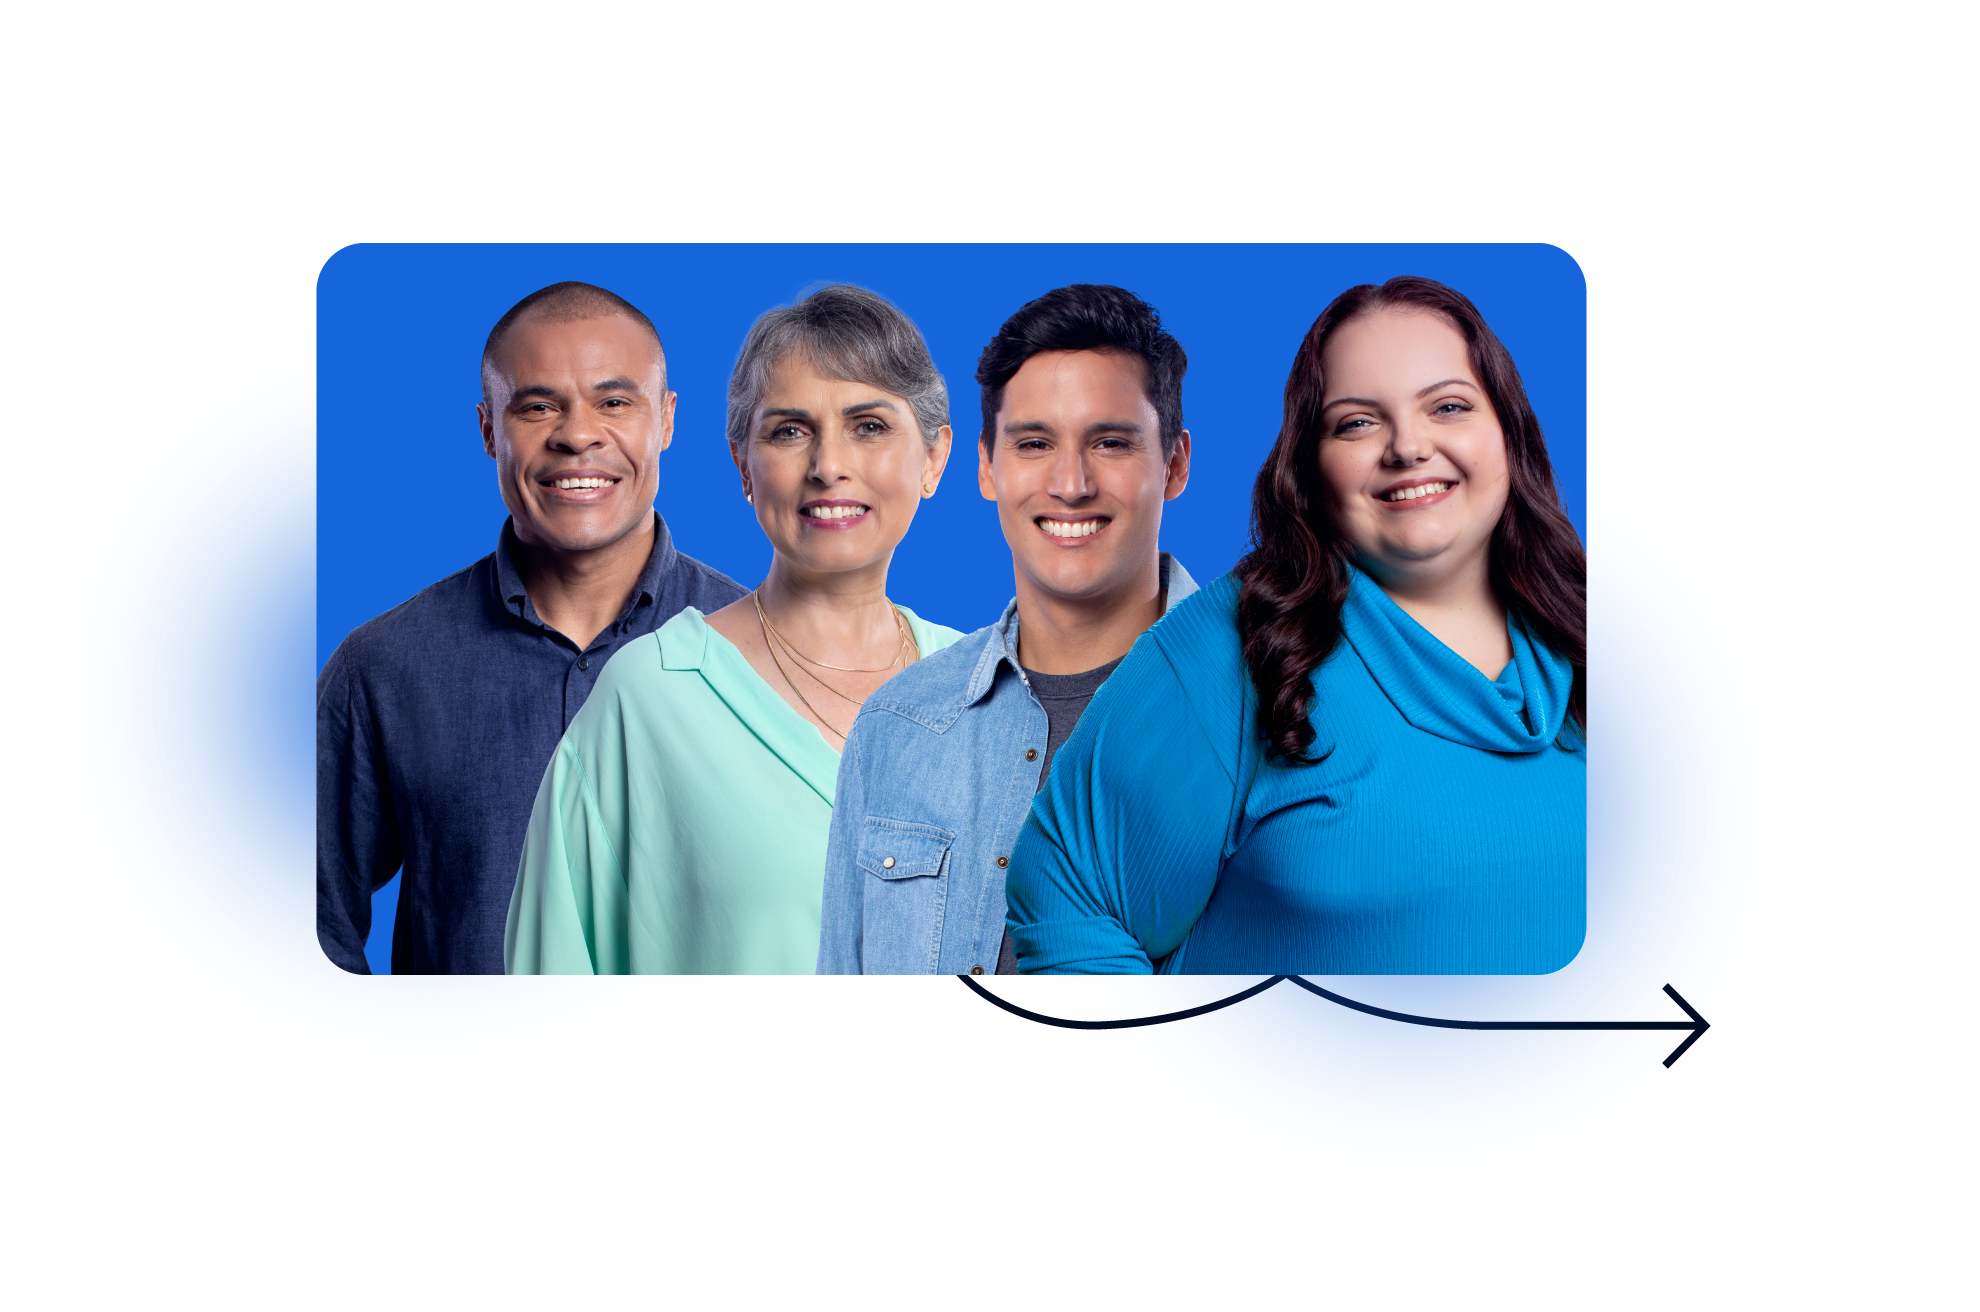 Imagem de quatro pessoas diversas sorrindo em um fundo azul